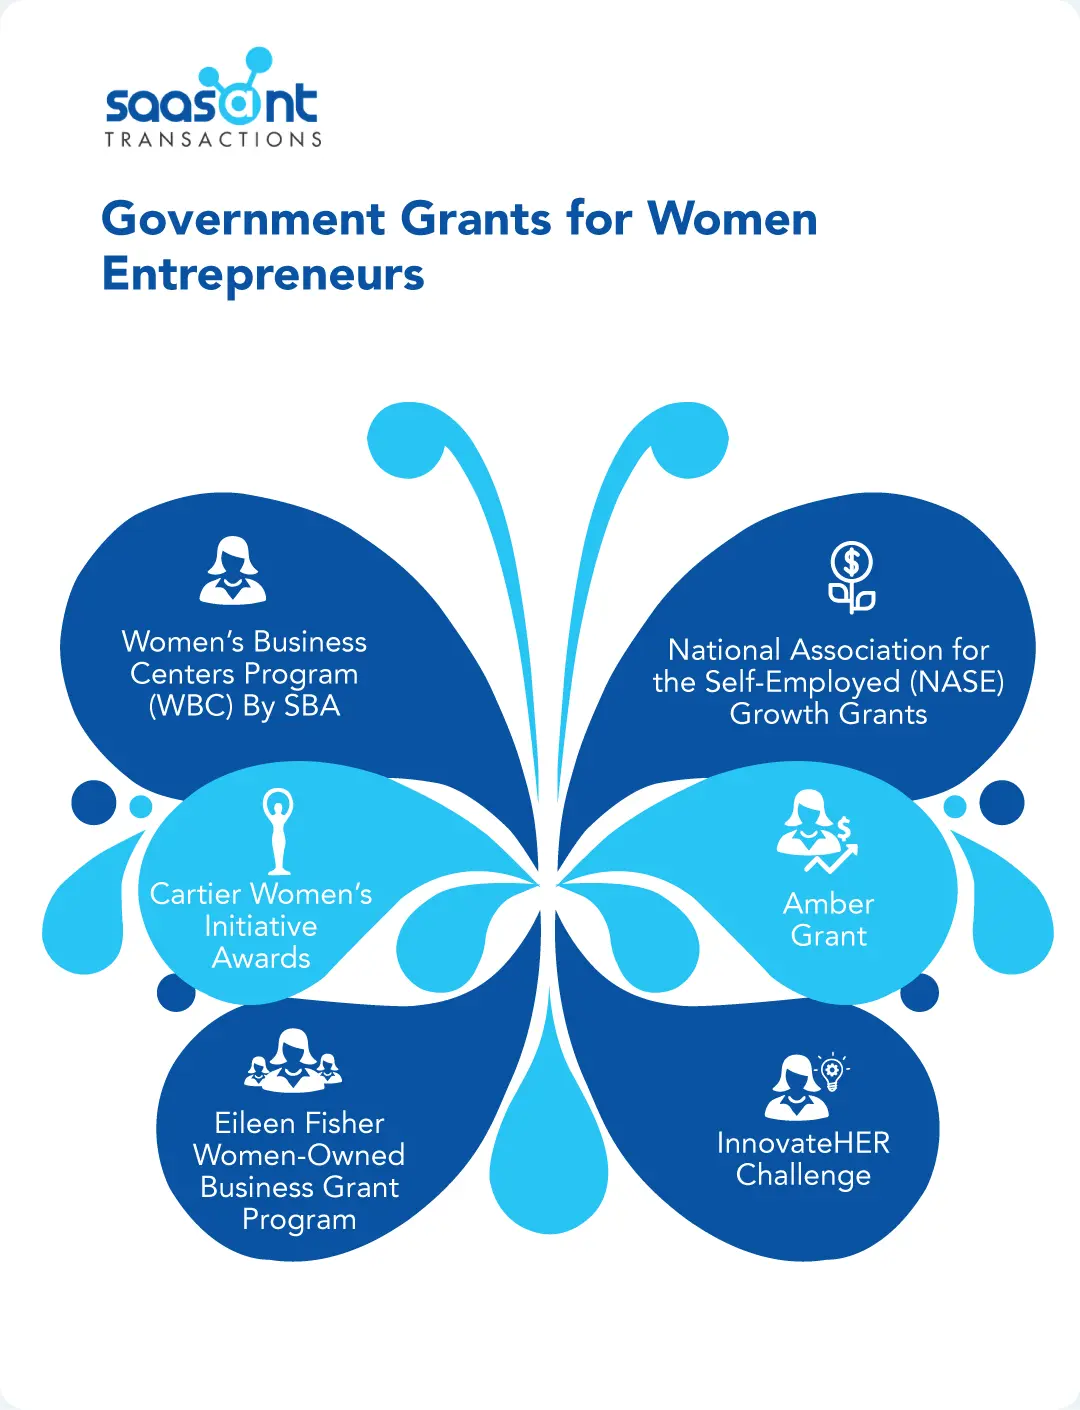 How Do Government Grants Benefit Women Entrepreneurs